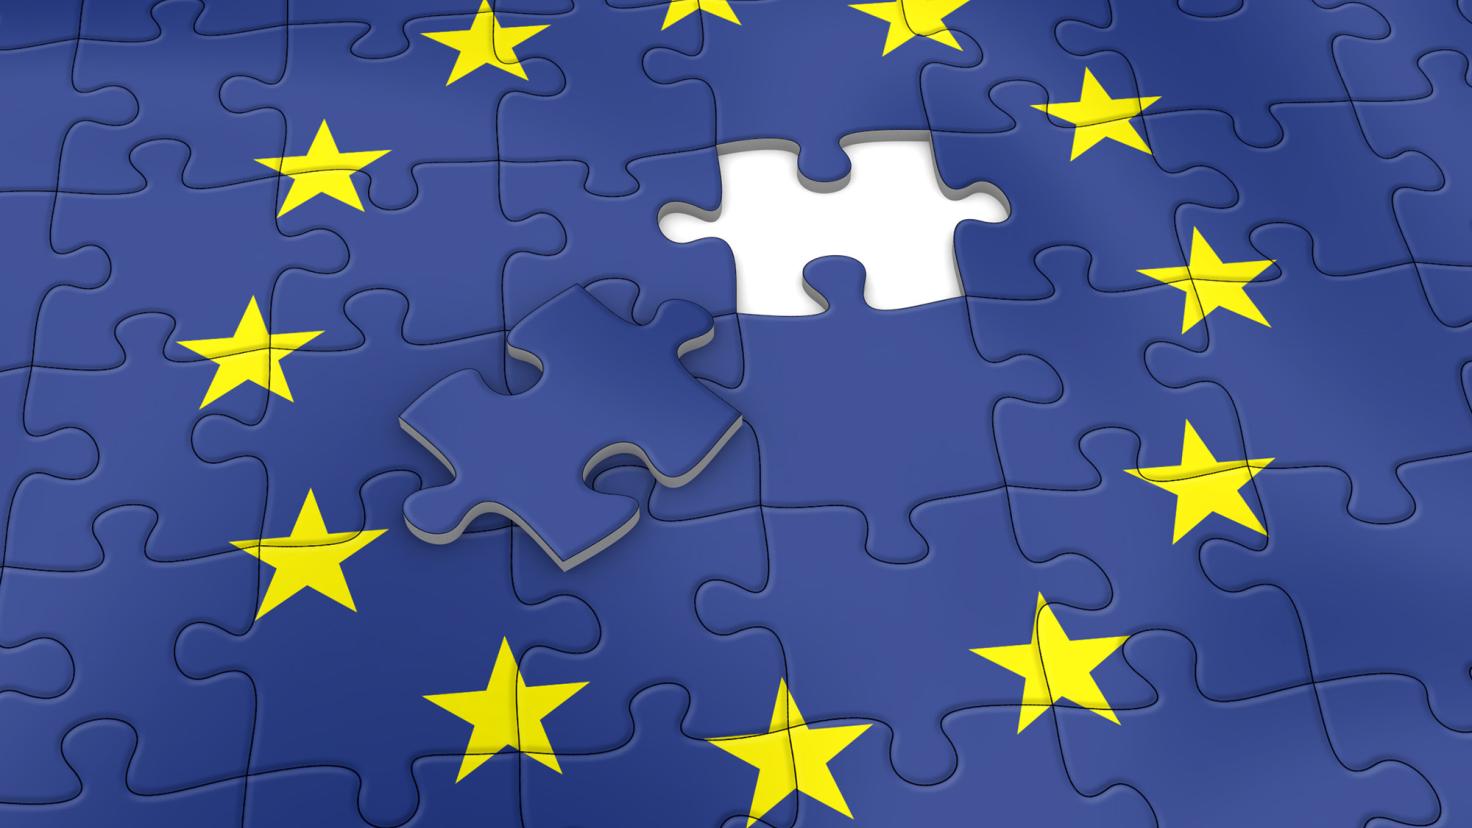 Het laatste puzzelstukje van de Europese vlag ligt bovenop de voltooide stukjes